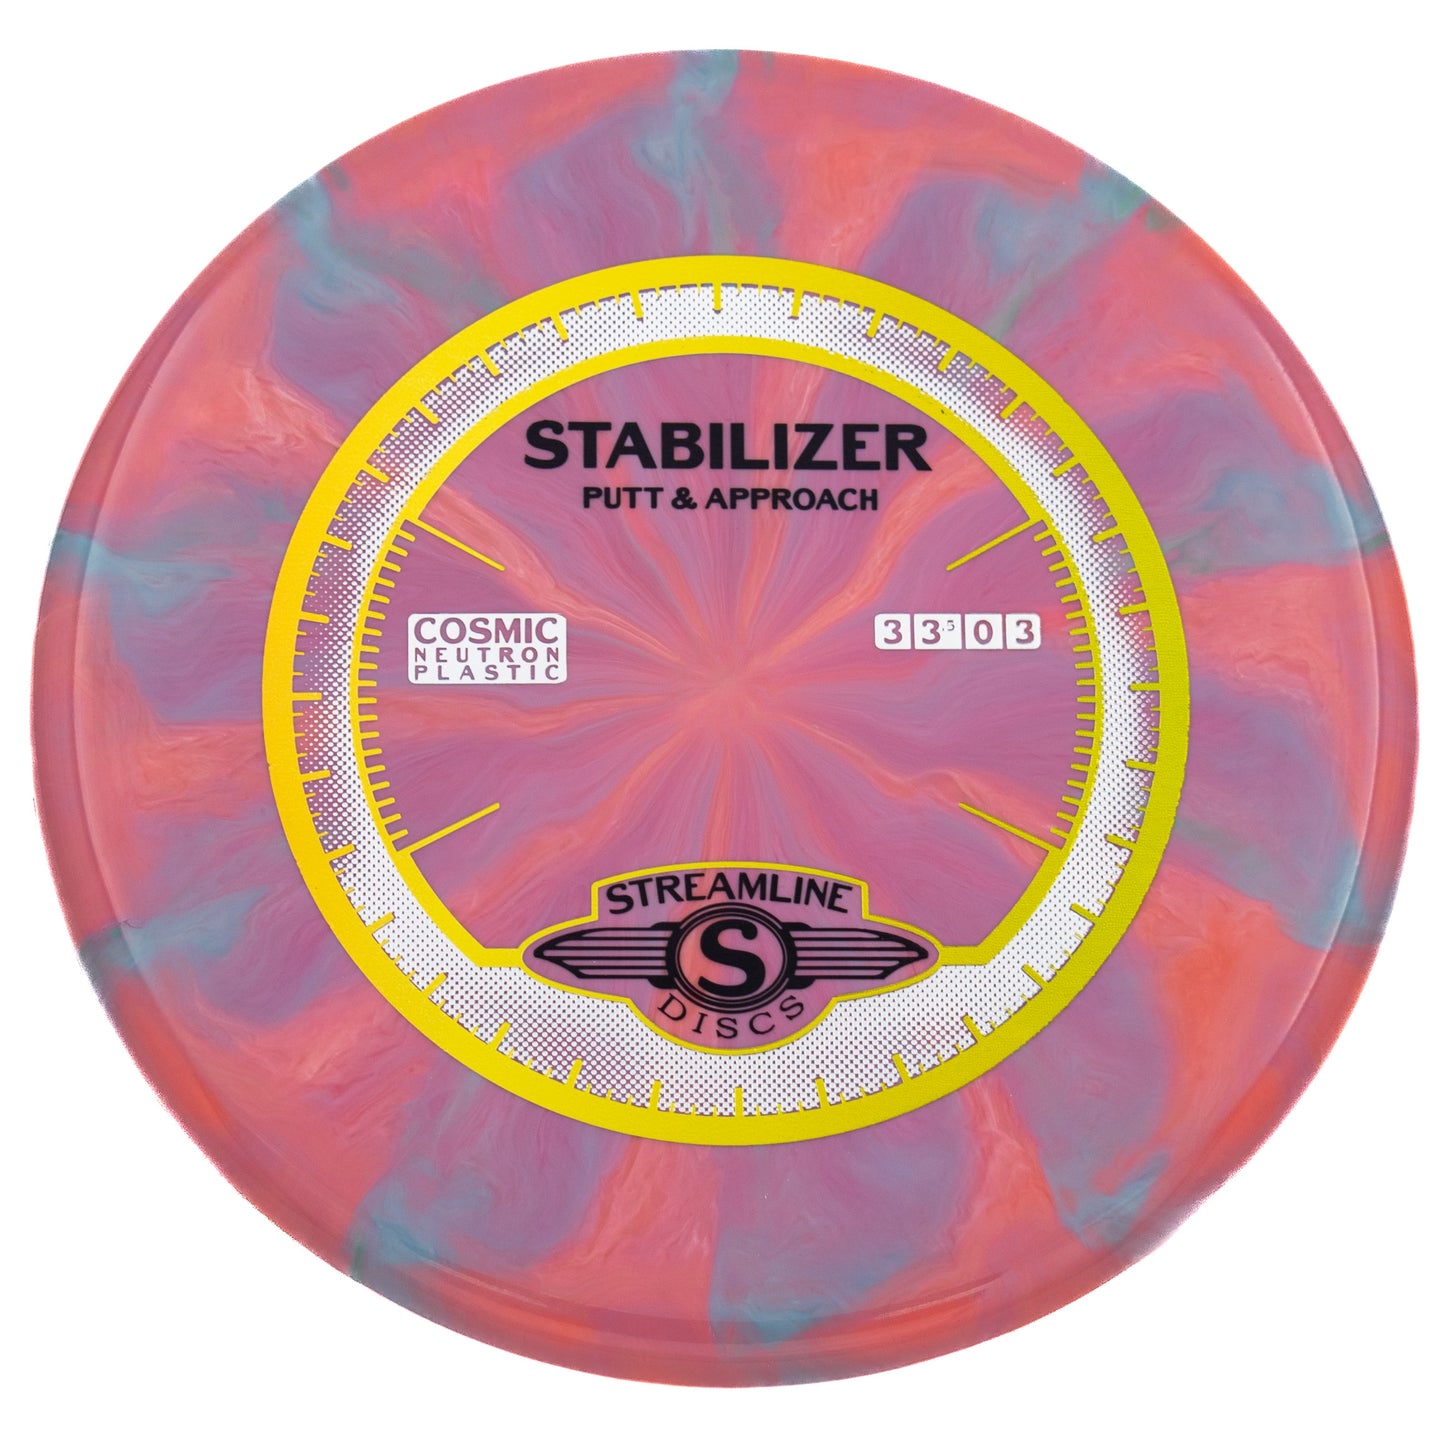 Streamline Stabilizer - Cosmic Neutron 174g | Style 0007